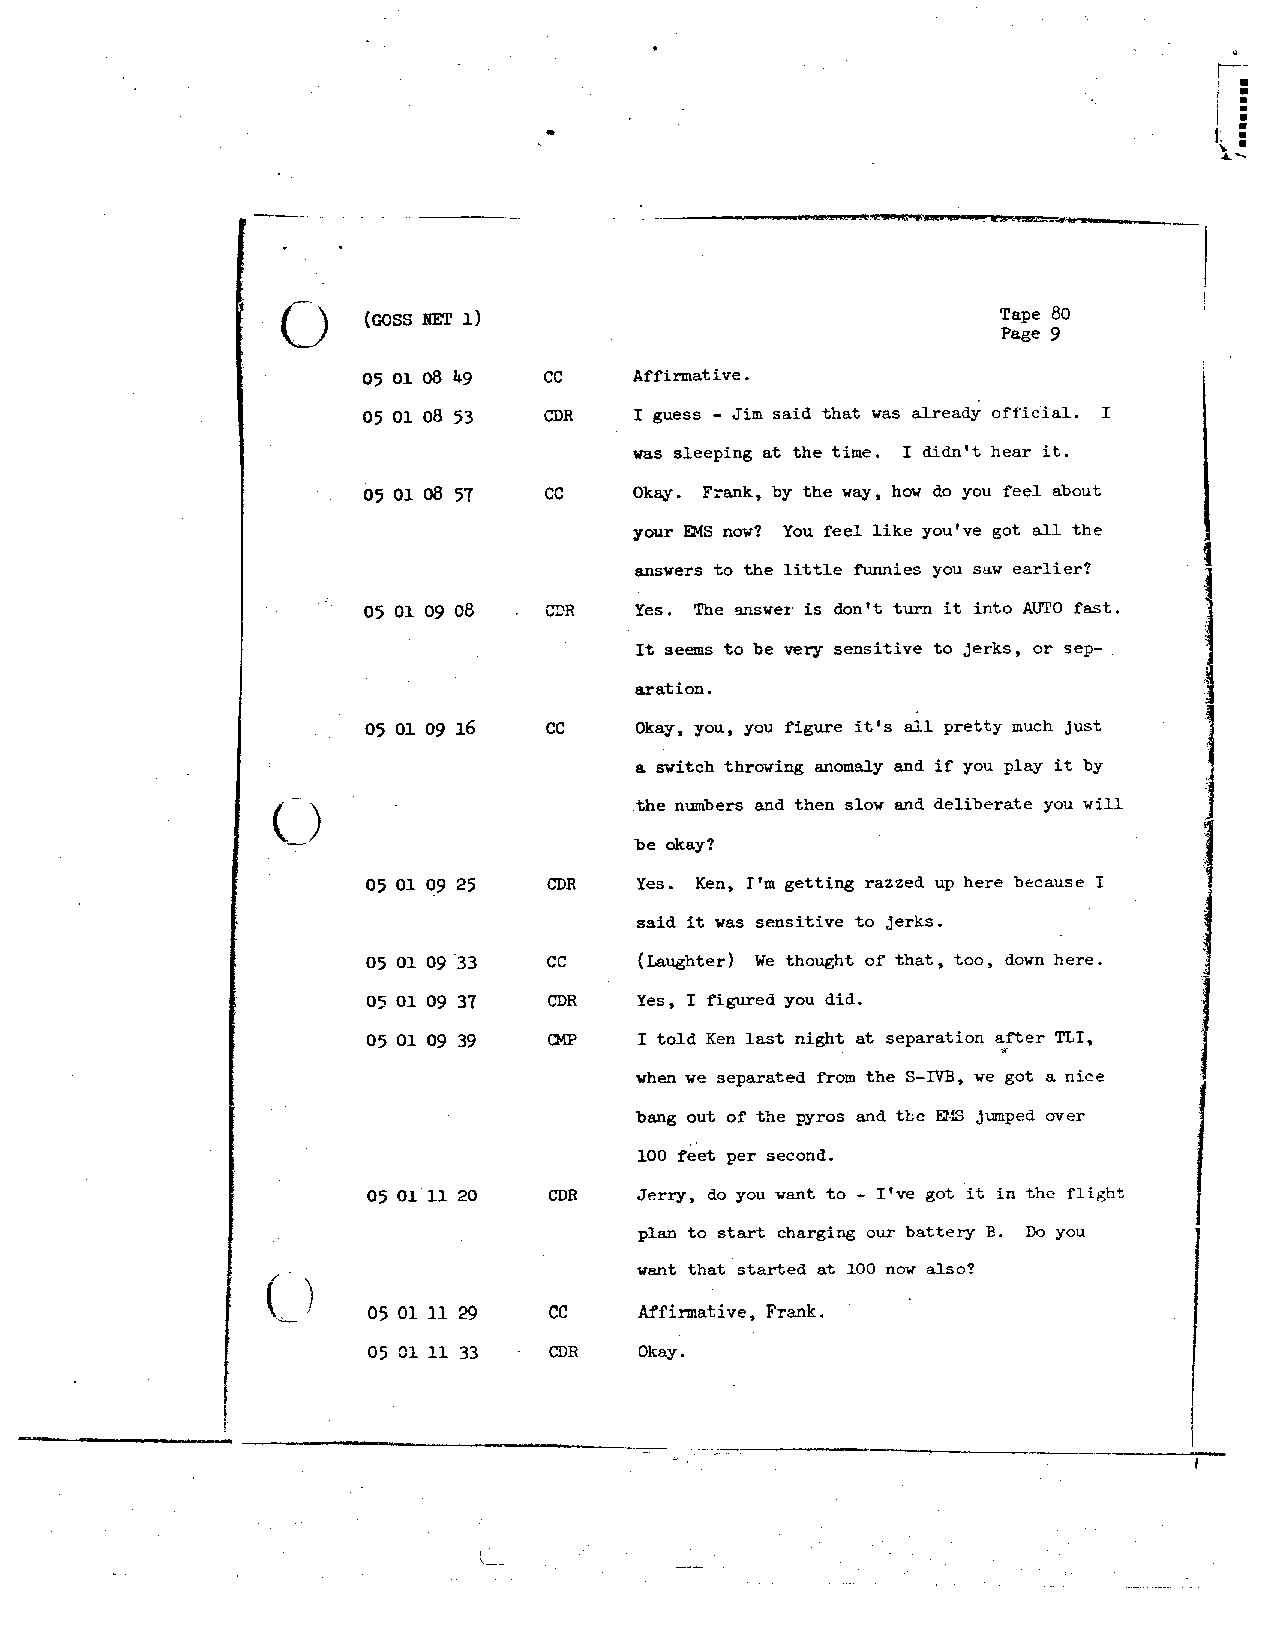 Page 666 of Apollo 8’s original transcript